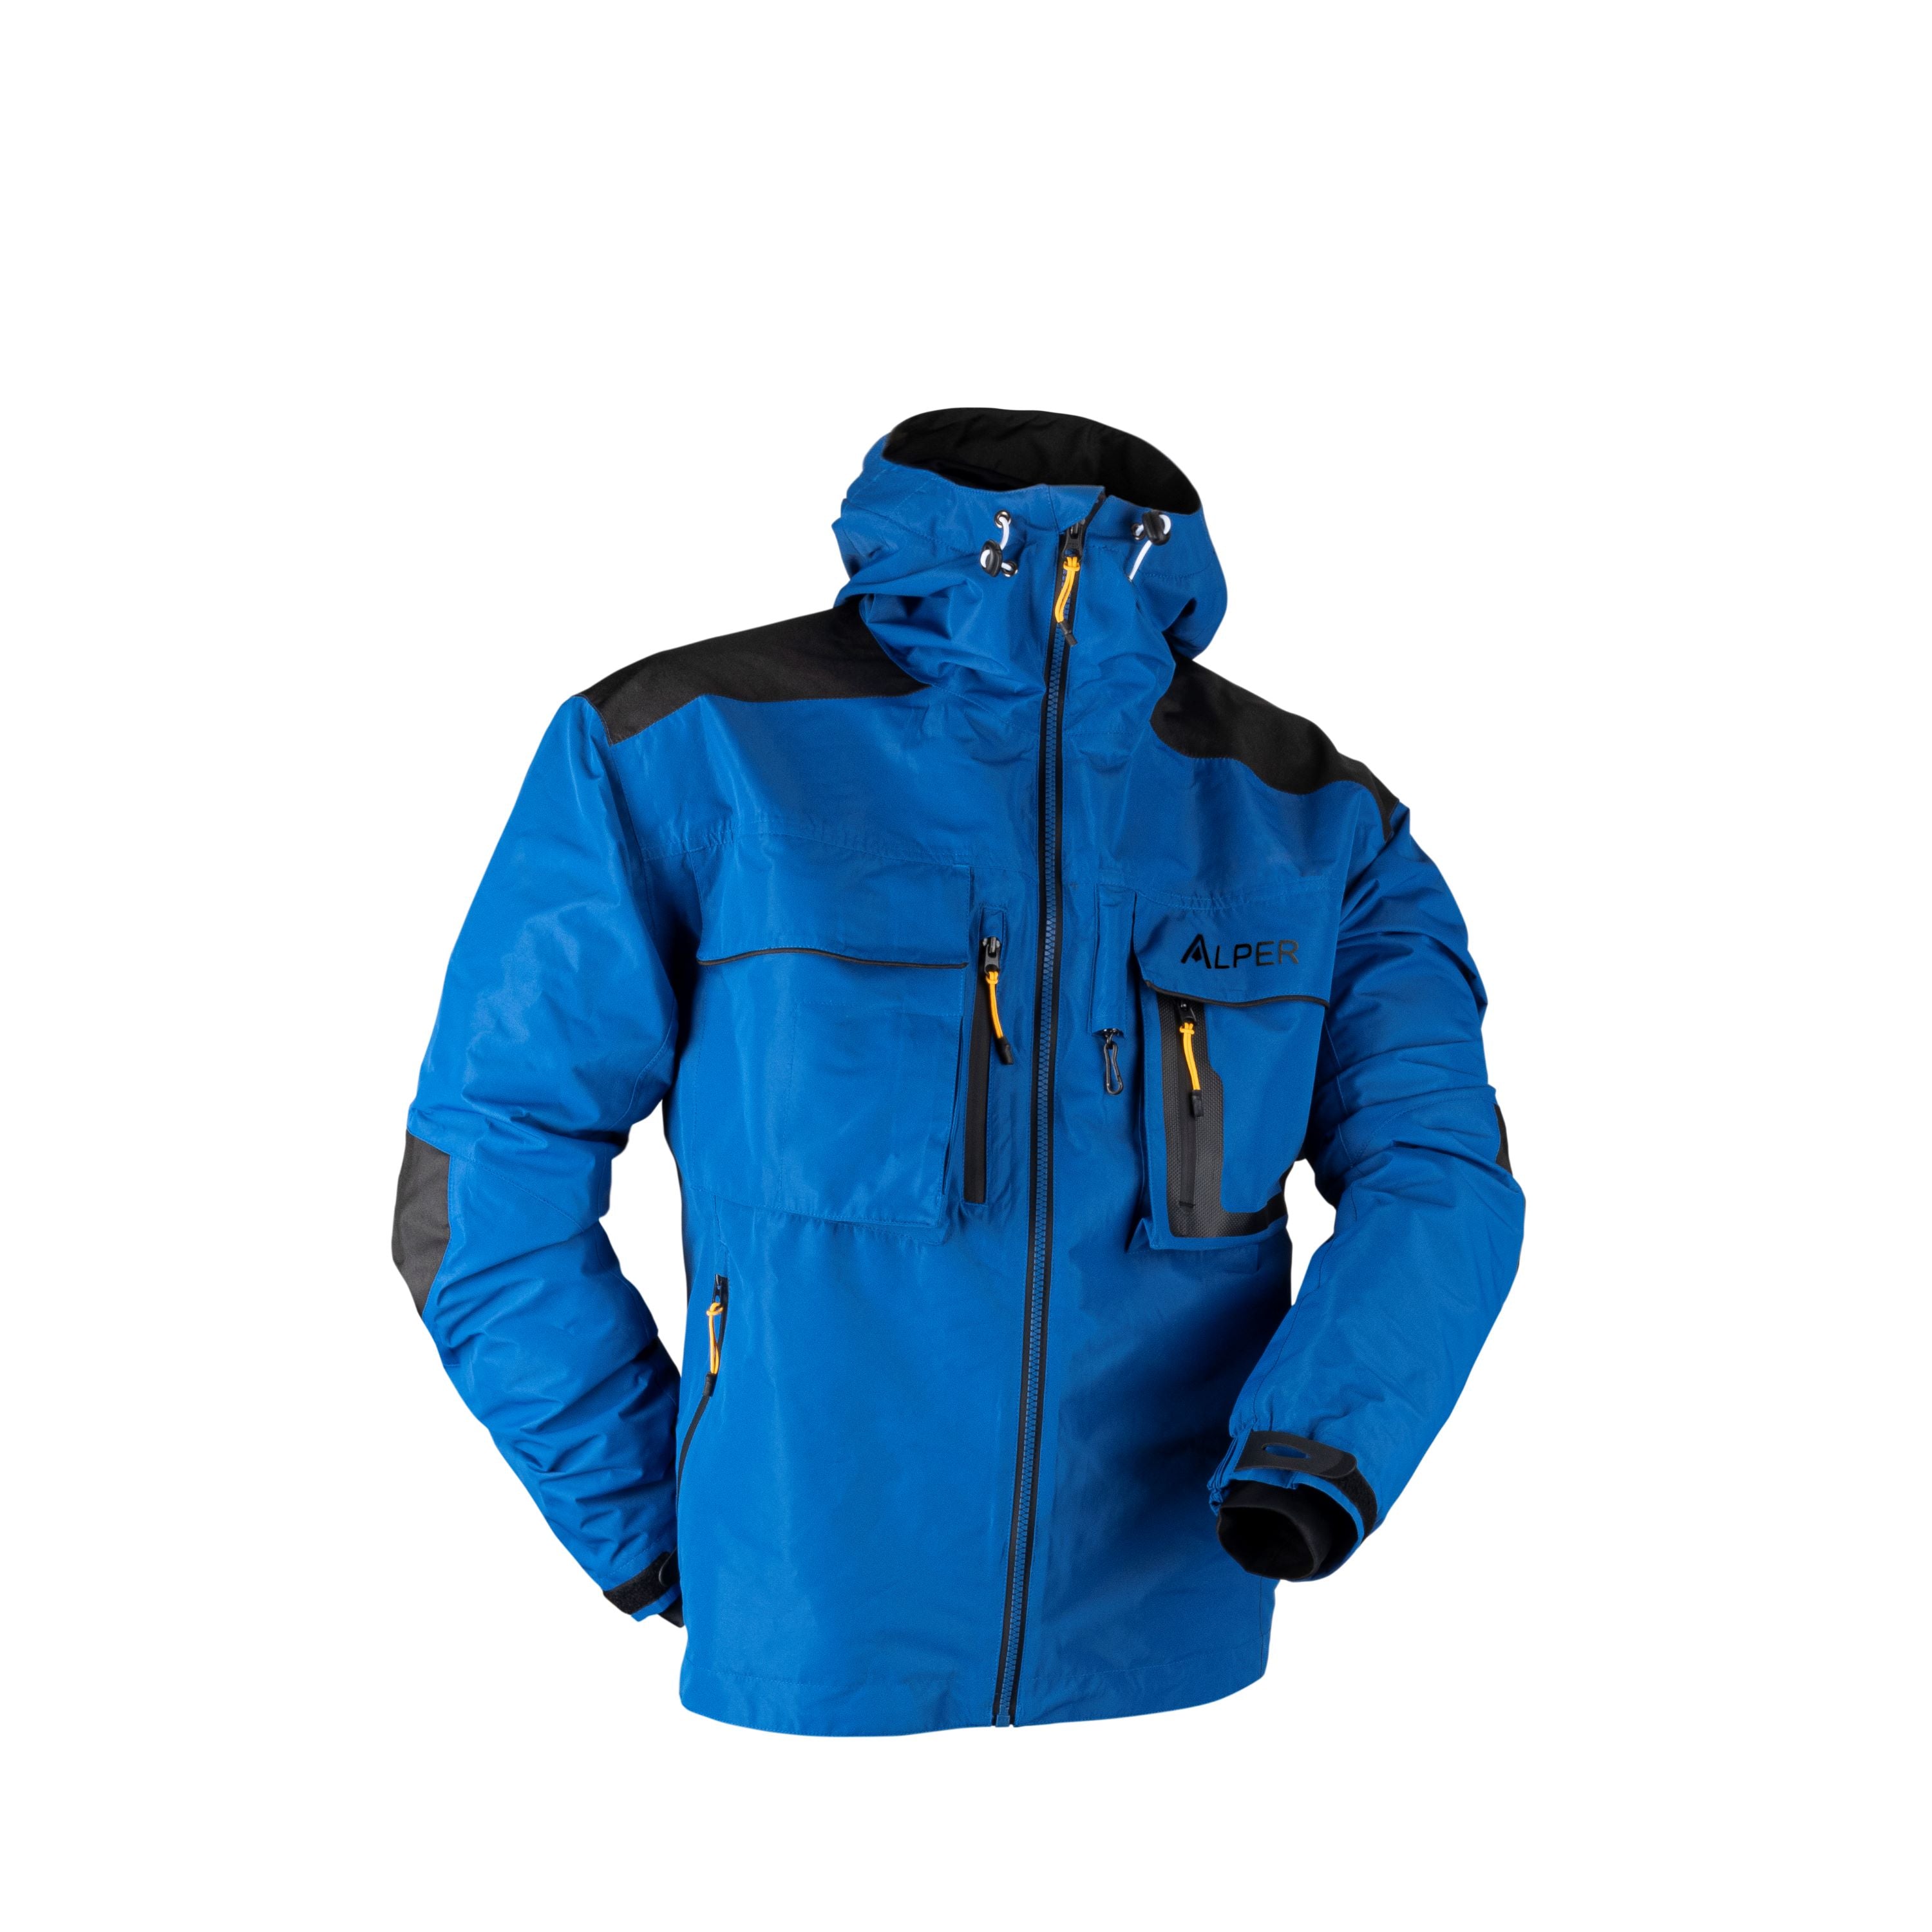 Manteau de pêche - Homme||Fishing jacket - Men's